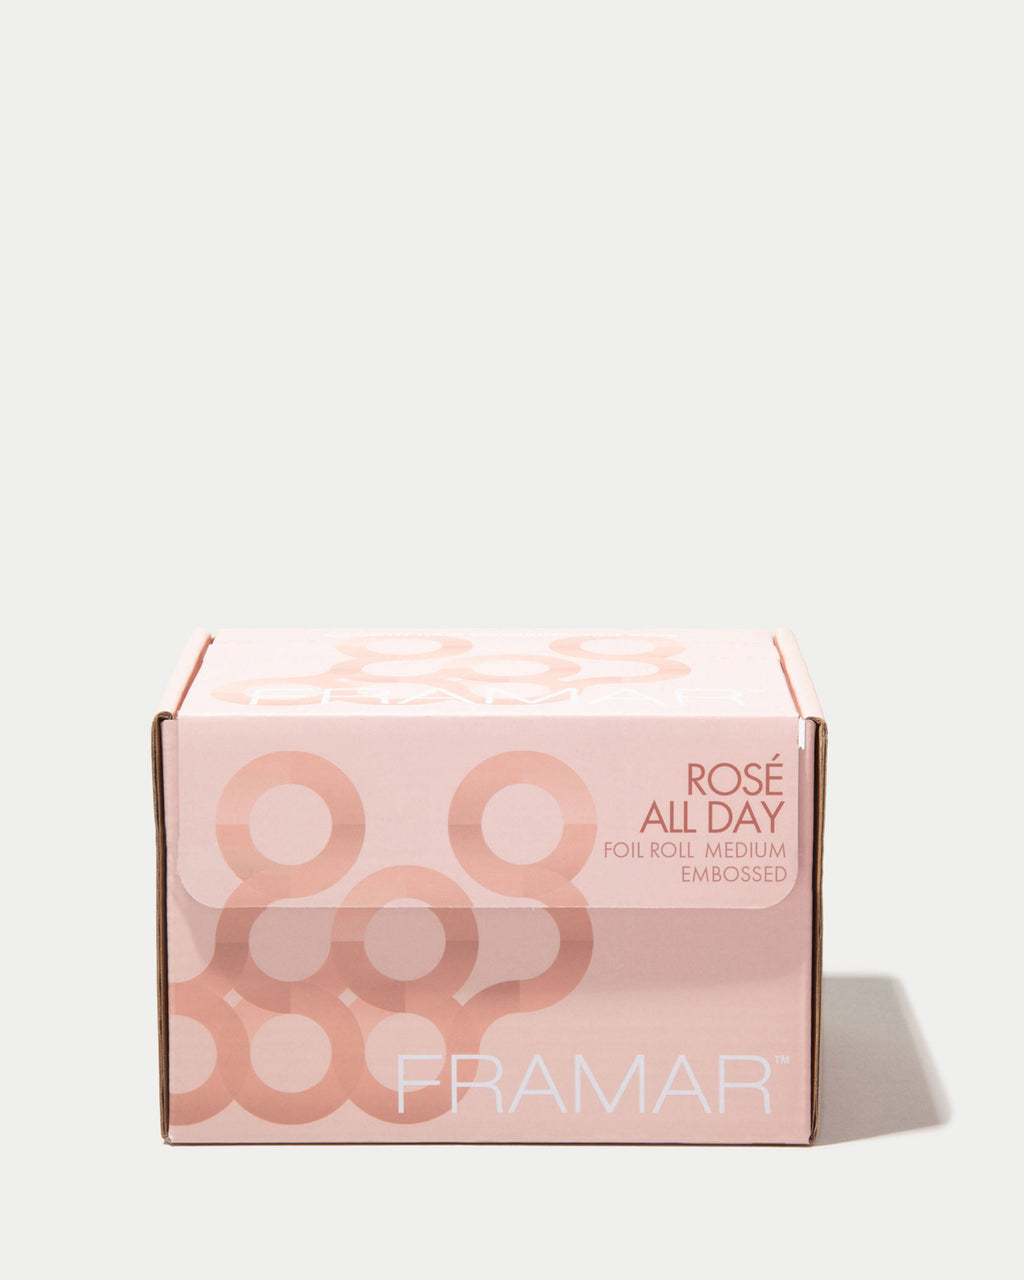 Framar Rosé All Day Embossed Roll Aluminum Foil, Hair Foils for Highlighting - Medium 320 ft